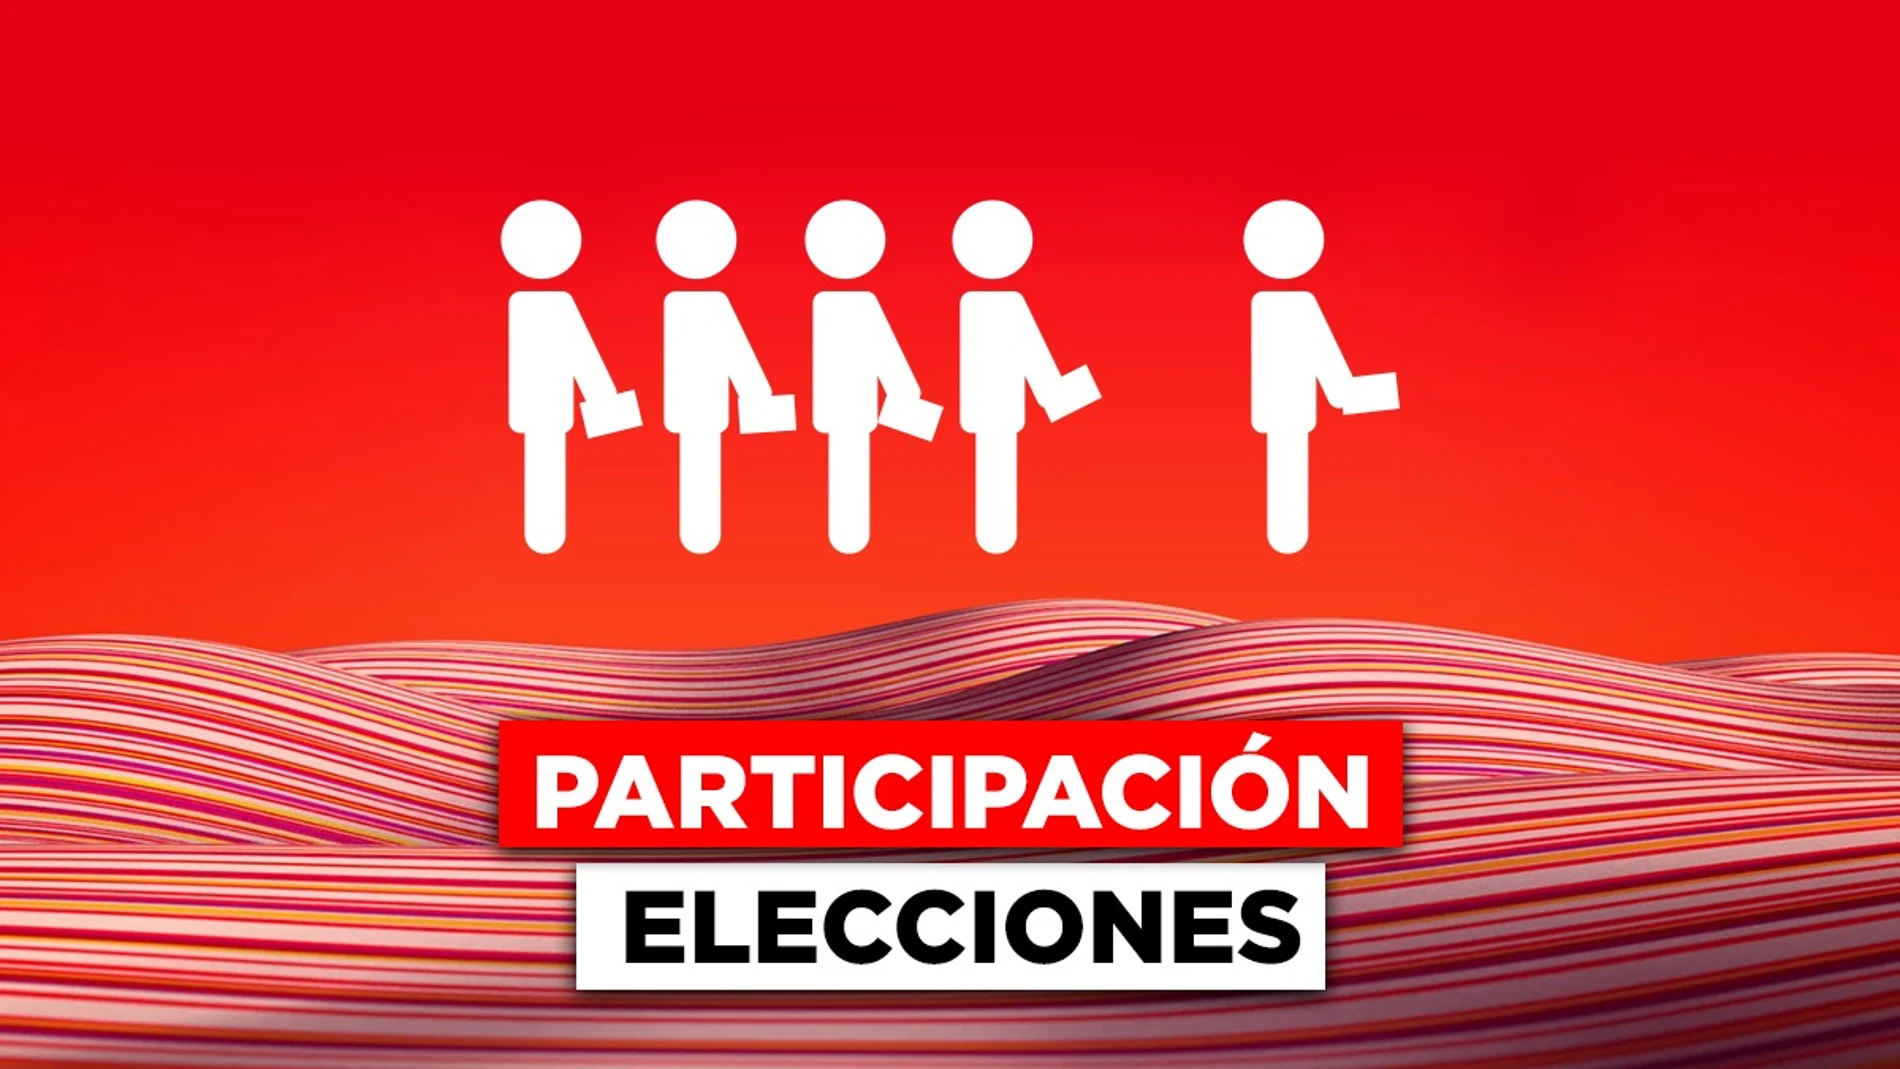 Elecciones Castilla y León: Esta fue la participación en las anteriores elecciones y los resultados por provincia 